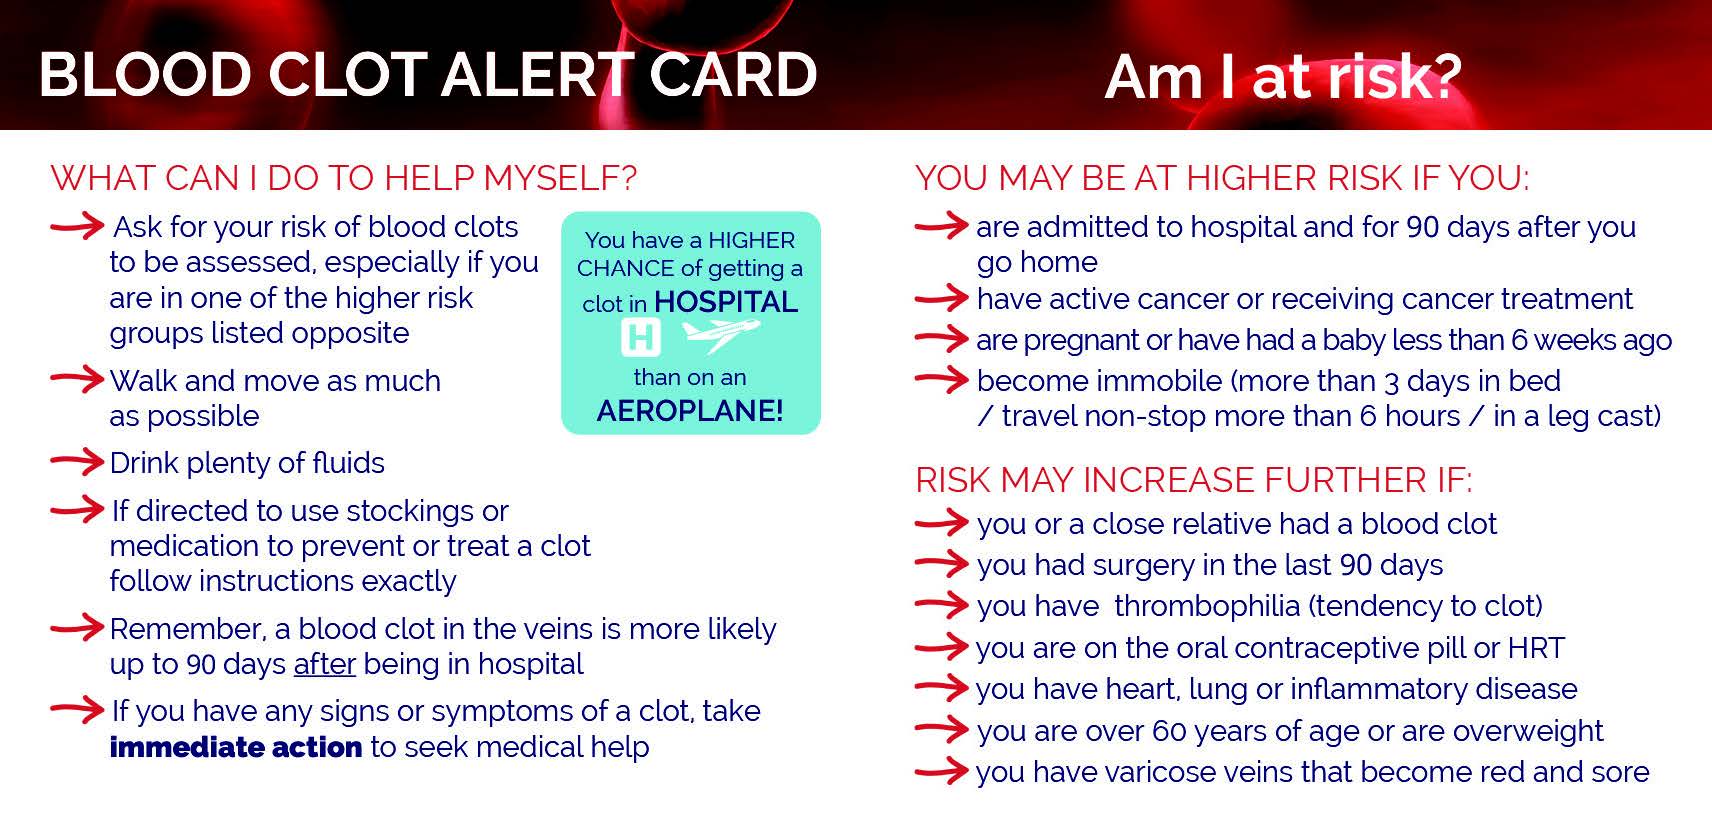 Blood clot alert card 2